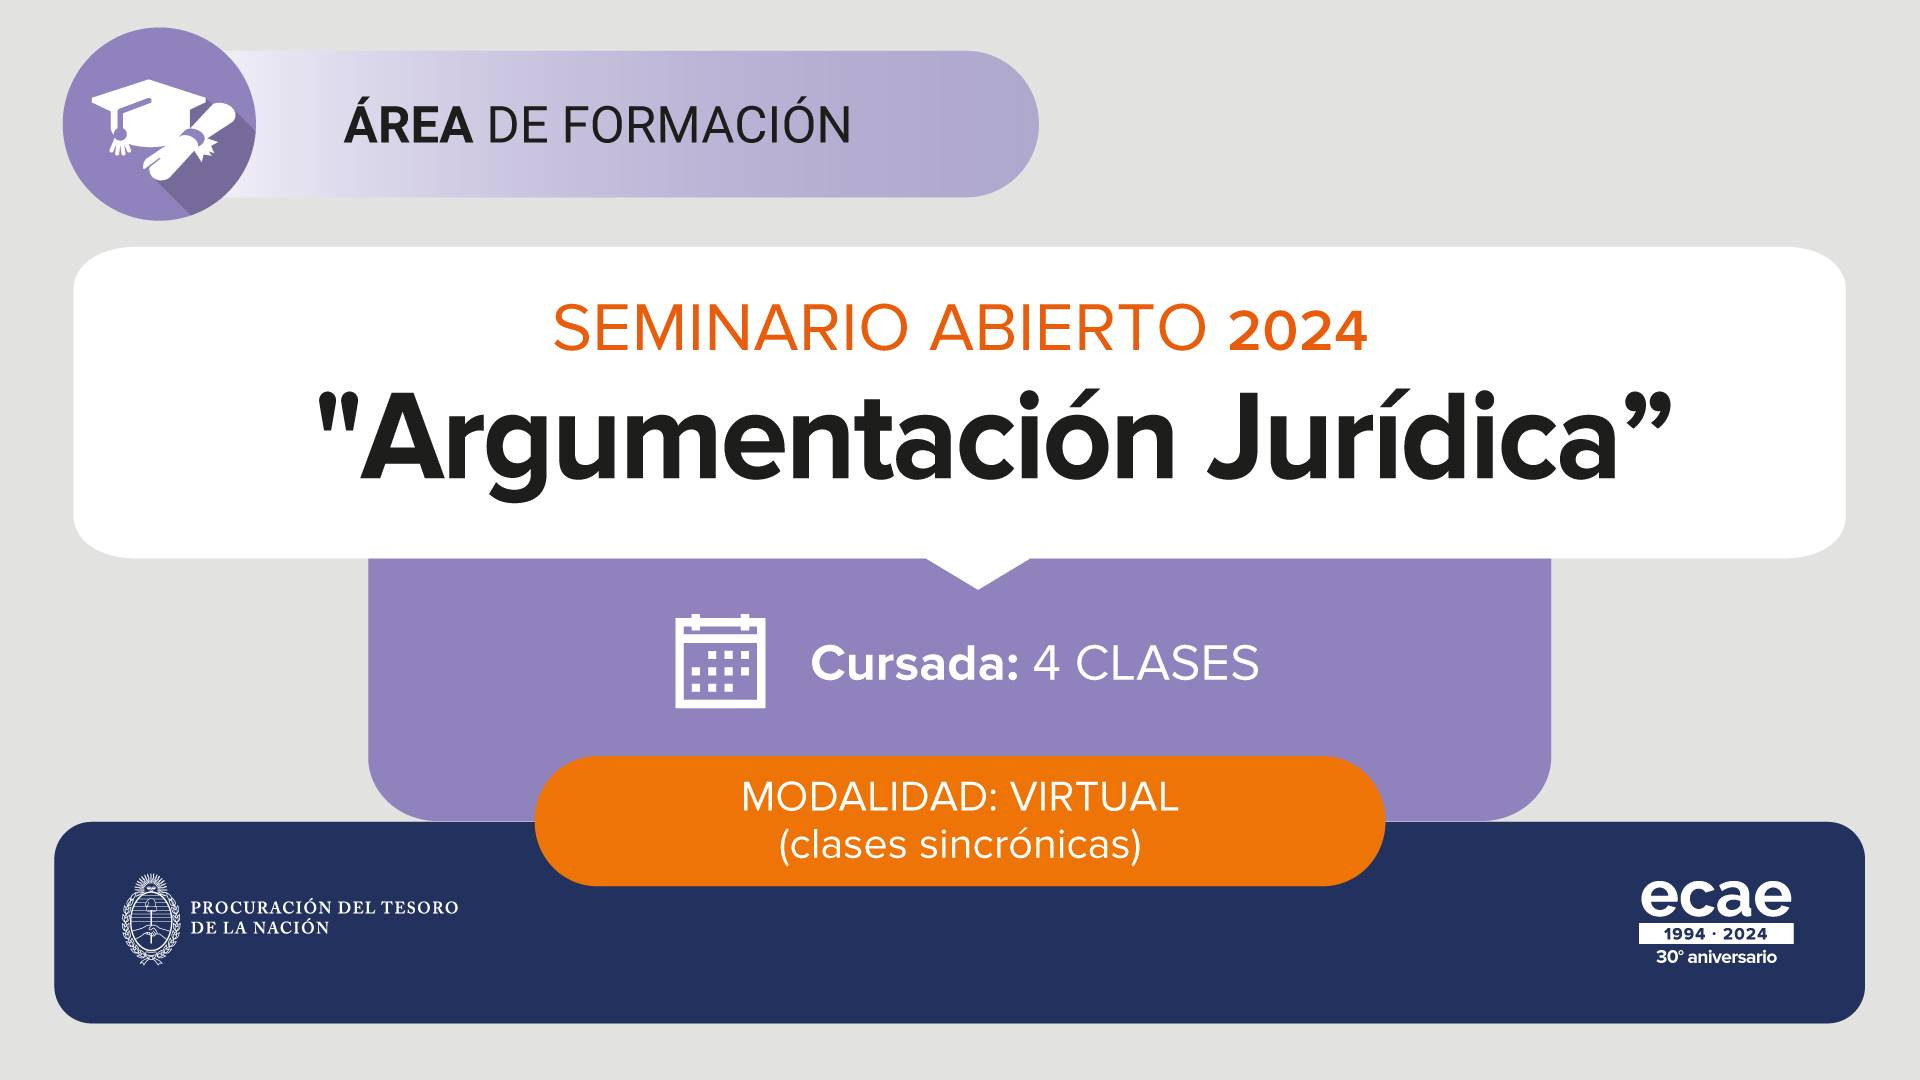 noticiaspuertosantacruz.com.ar - Imagen extraida de: https://argentina.gob.ar/noticias/nuevos-seminarios-ecae